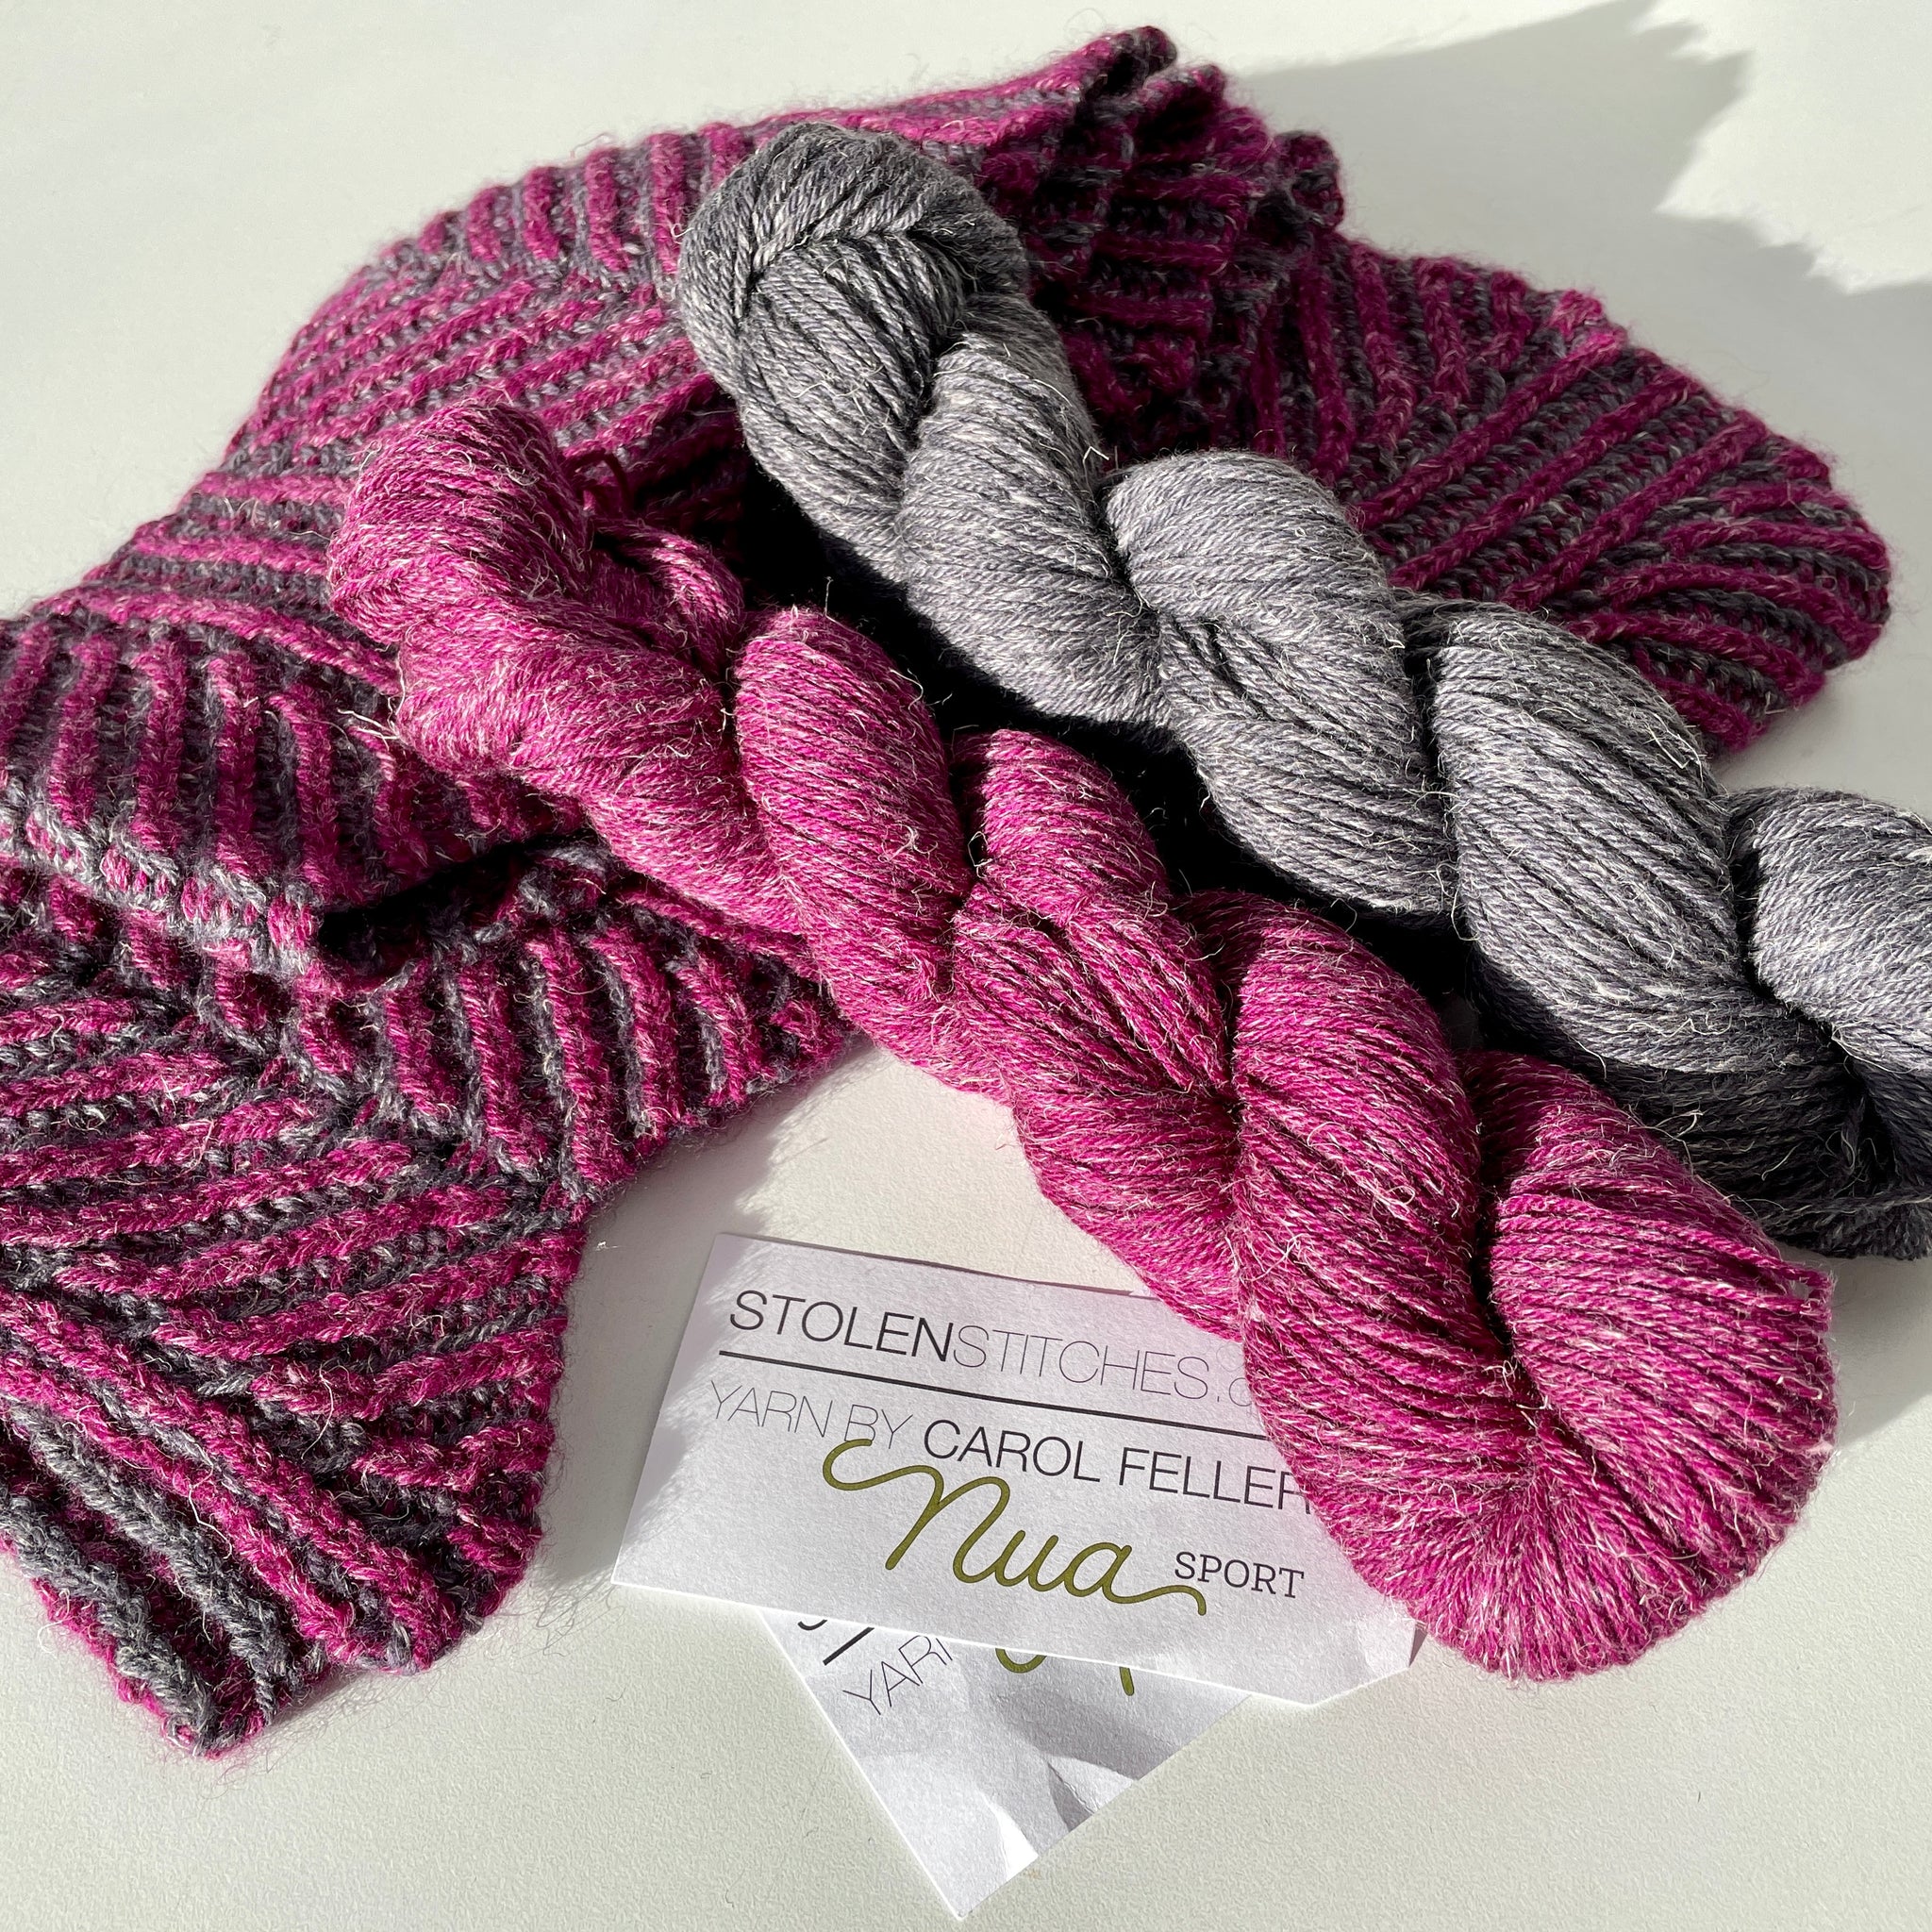 Flying Leaves Yarn Kit, Hand Knitting